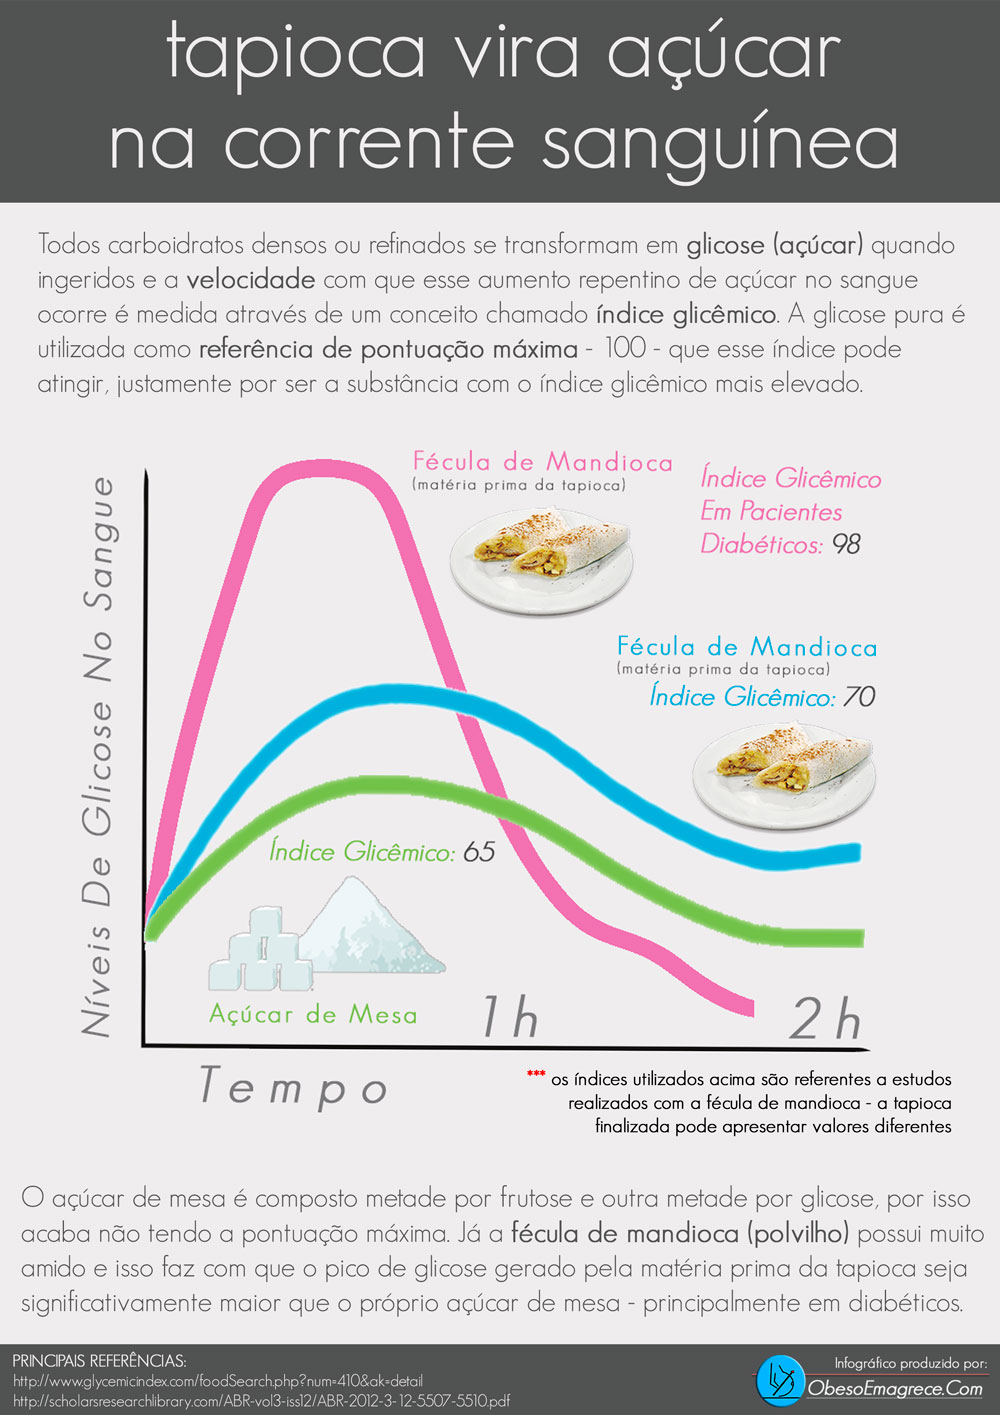 tapioca engorda ou emagrece - infográfico "tapioca vira açúcar na corrente sanguínea"